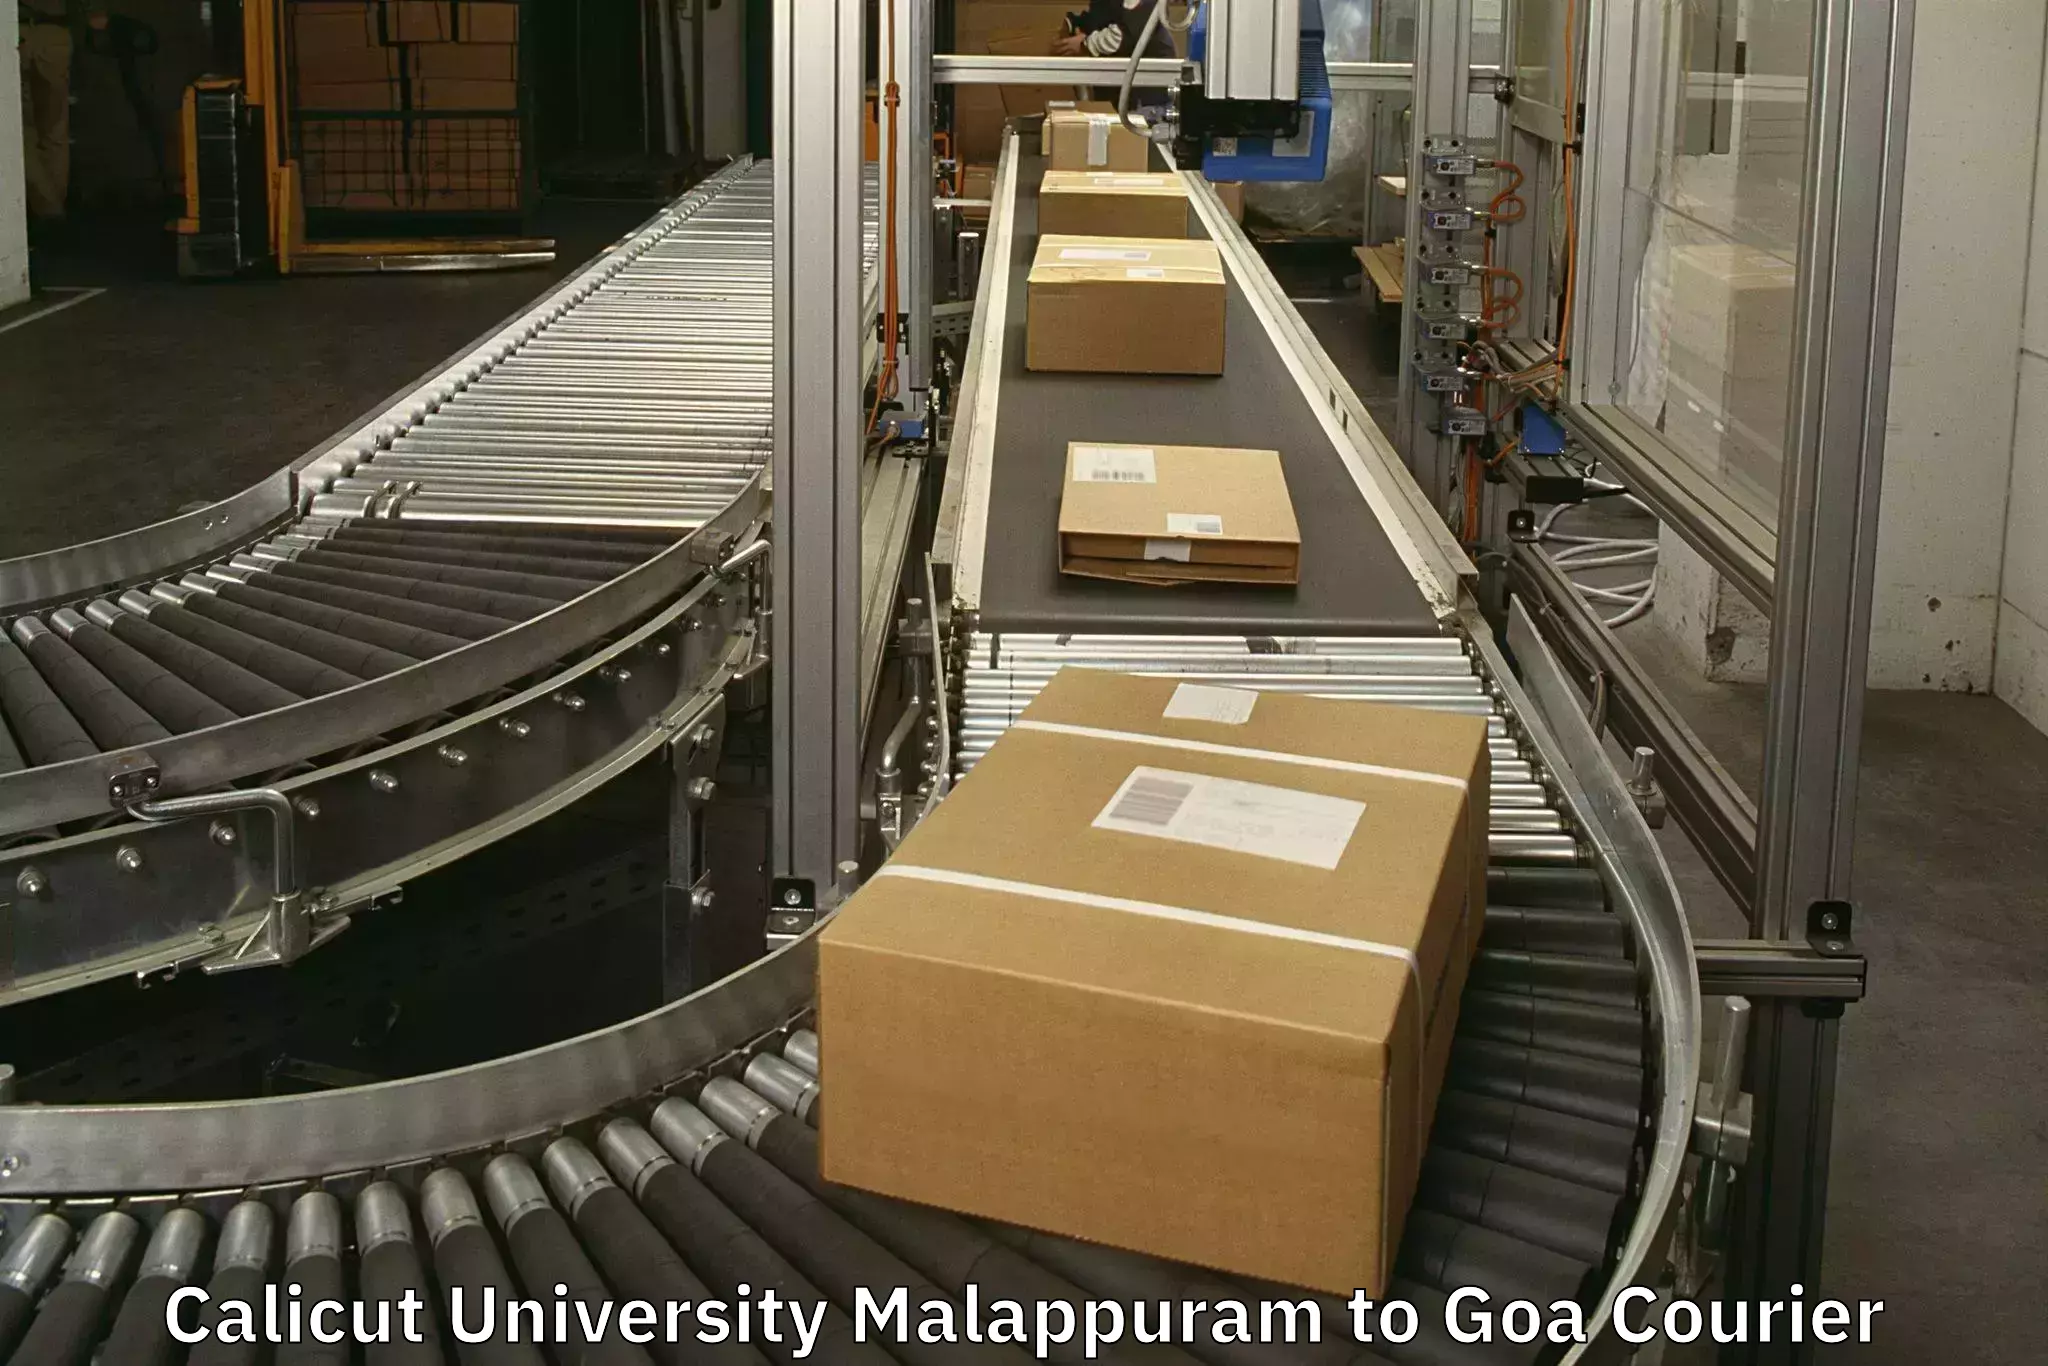 Luggage forwarding service Calicut University Malappuram to IIT Goa